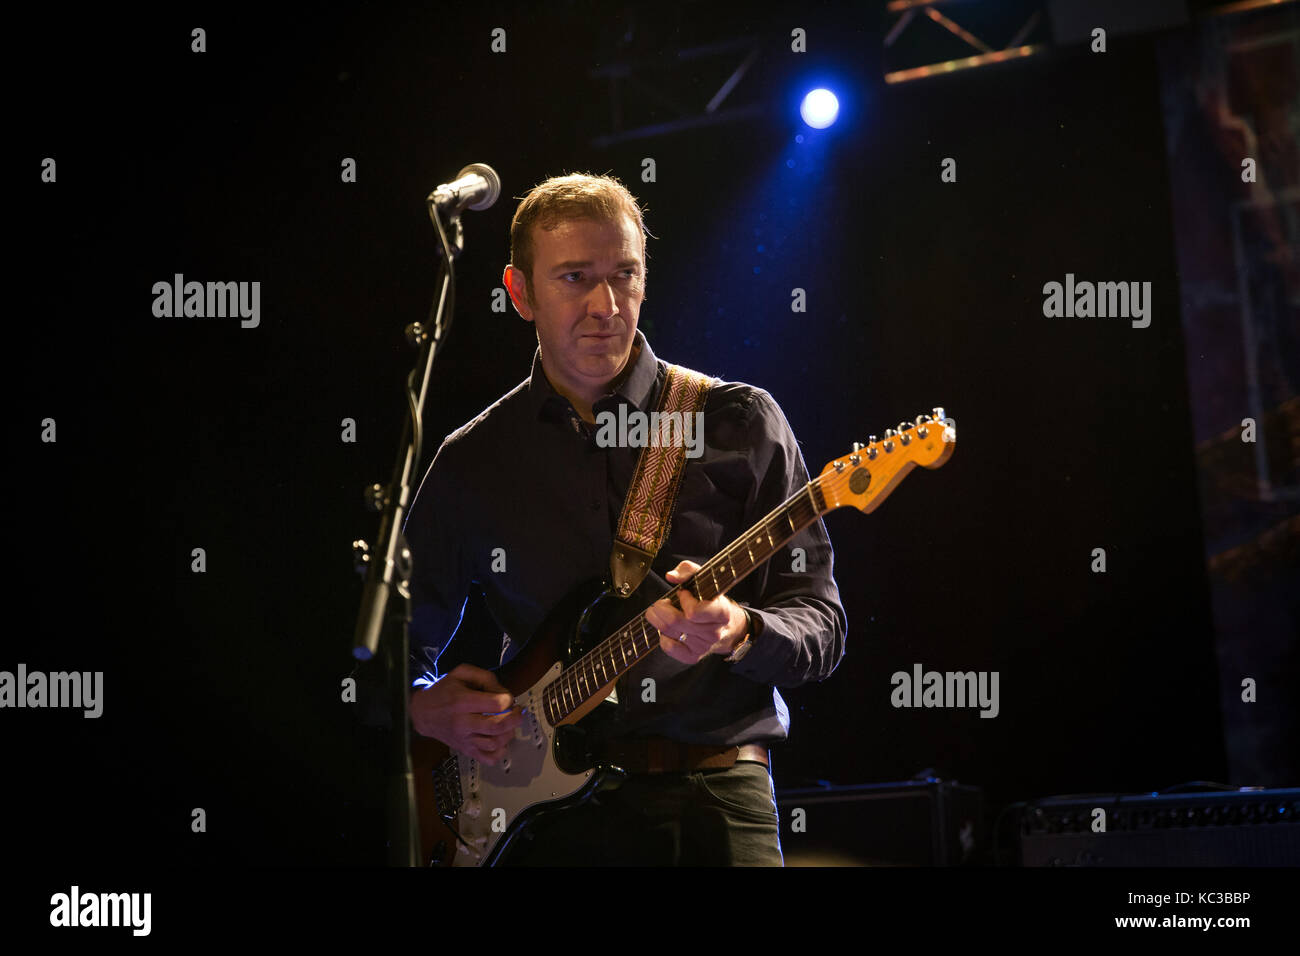 La band inglese post-punk The Fall si esibisce in un concerto dal vivo presso la Vulkan Arena come parte dell'Oslo Psych Festival 2016. Qui il chitarrista Pete Greenway è visto dal vivo sul palco. Norvegia, 11/11 2016. Foto Stock